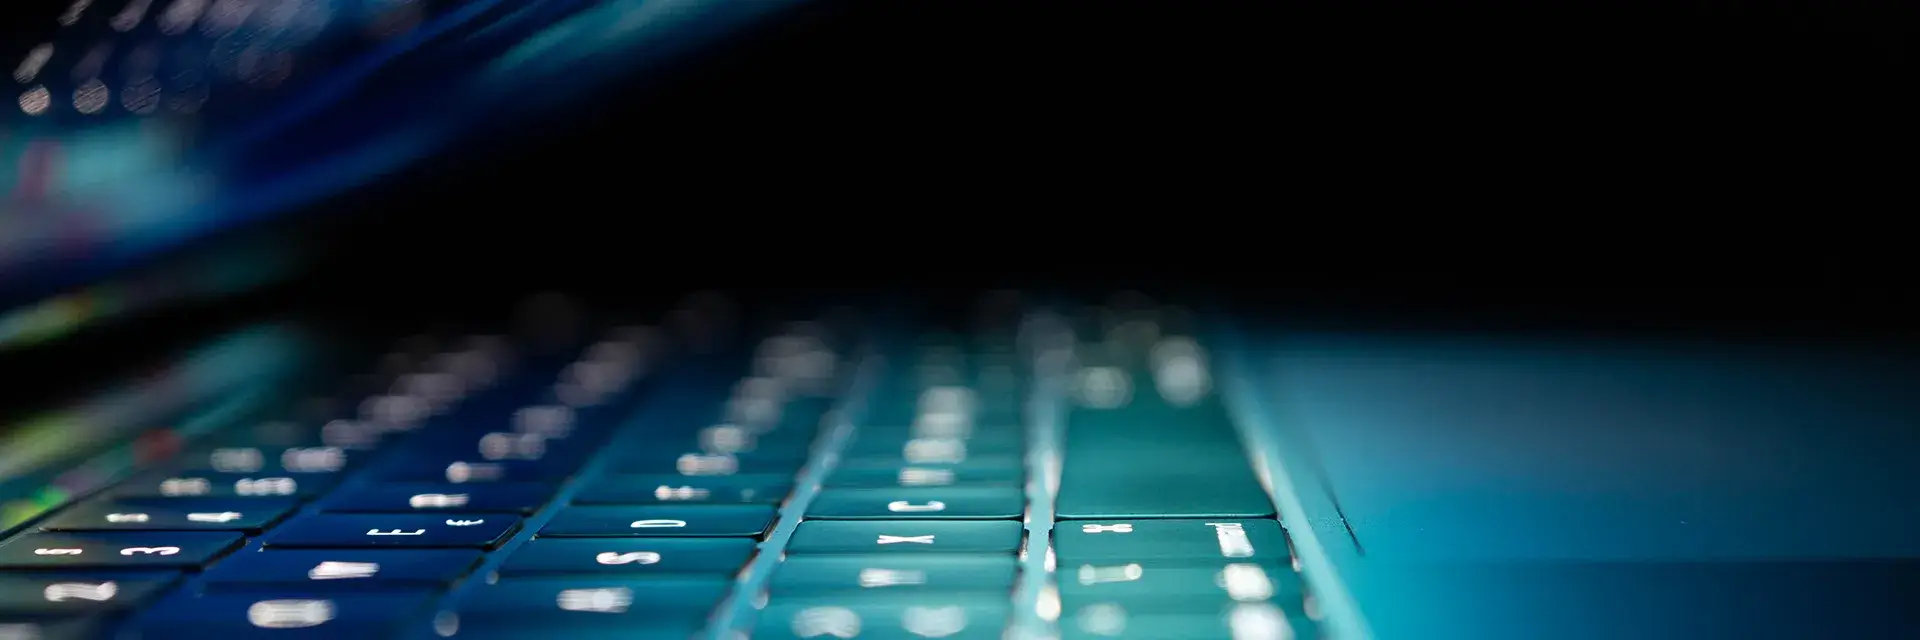 Laptop keyboard lit by the laptop screen screen in a dark room